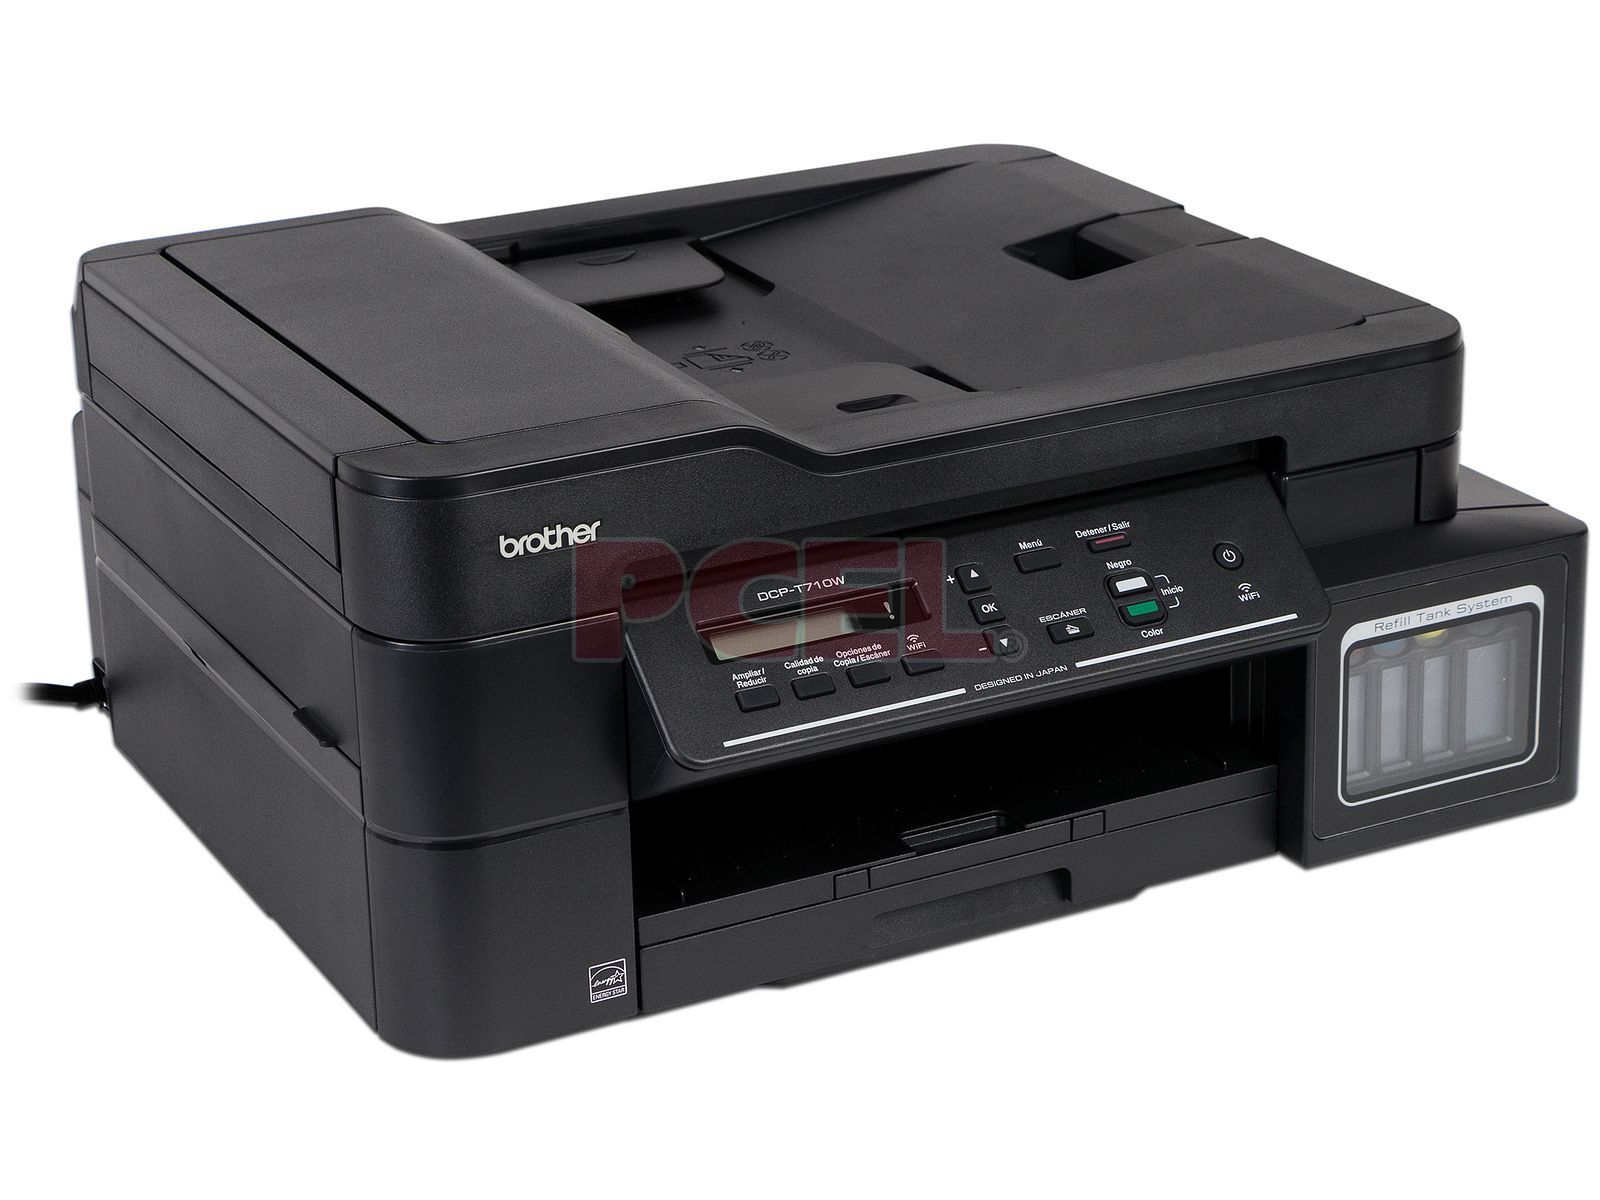 Impresora Multifuncional Brother Ink Tank DCP-T710W / Tinta continua /  Color / WiFi / USB - Tecnología y más